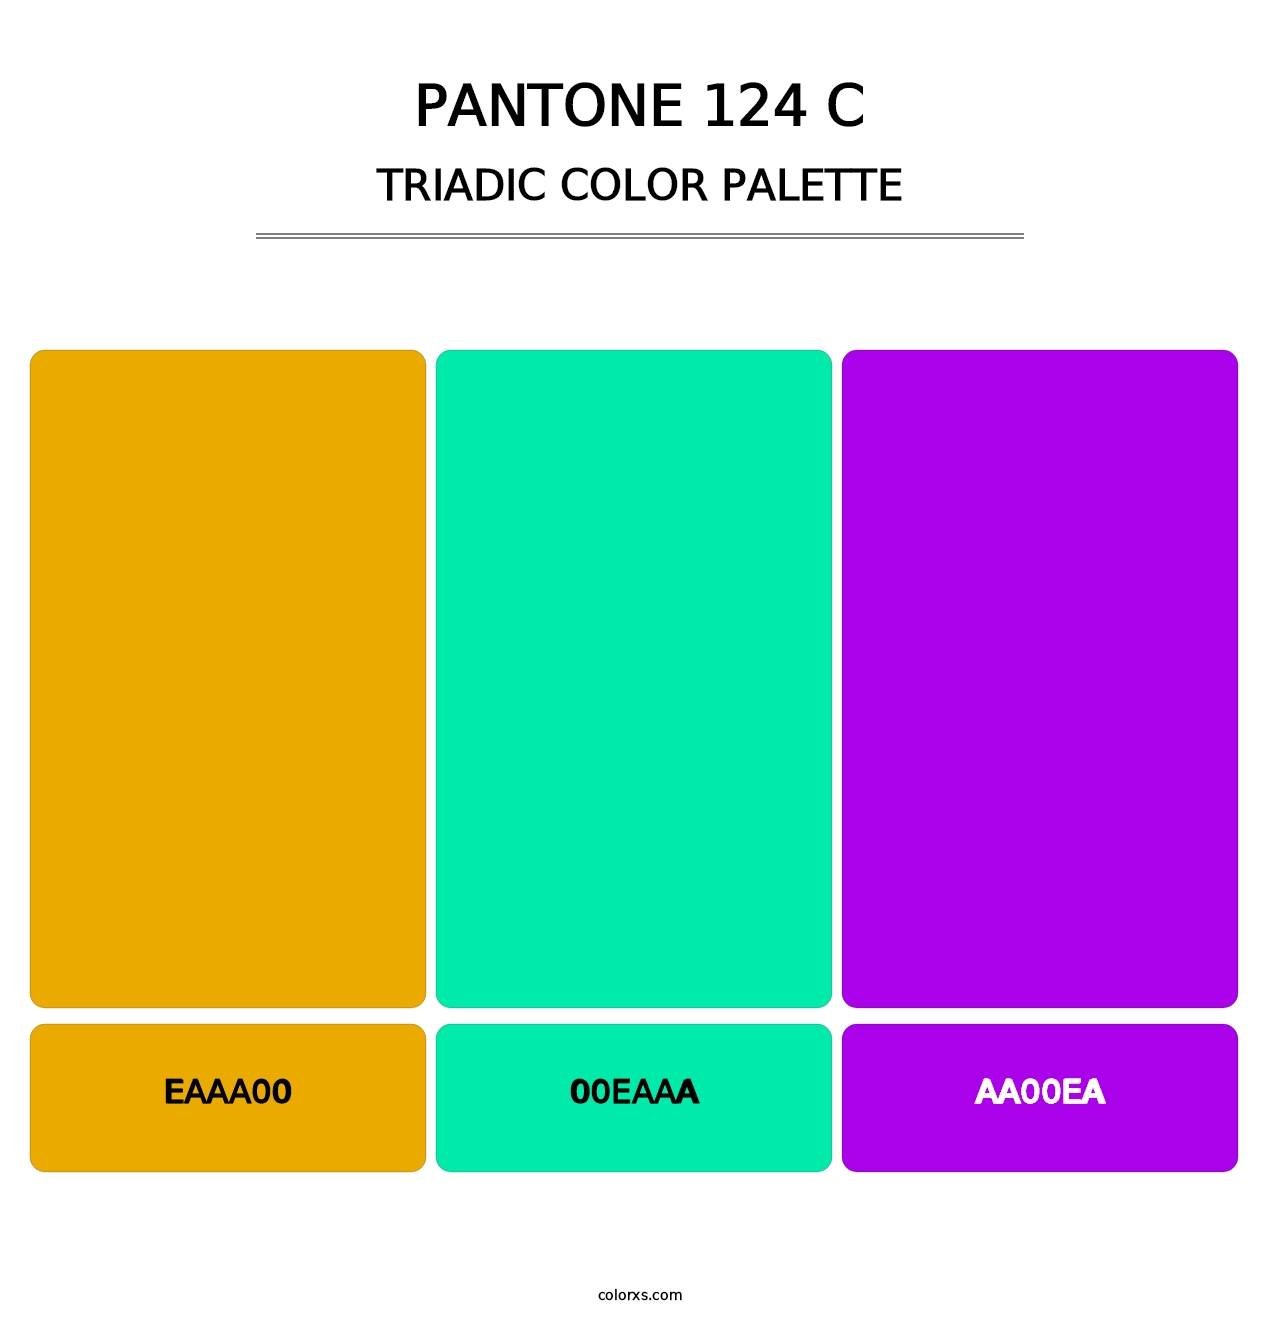 PANTONE 124 C - Triadic Color Palette